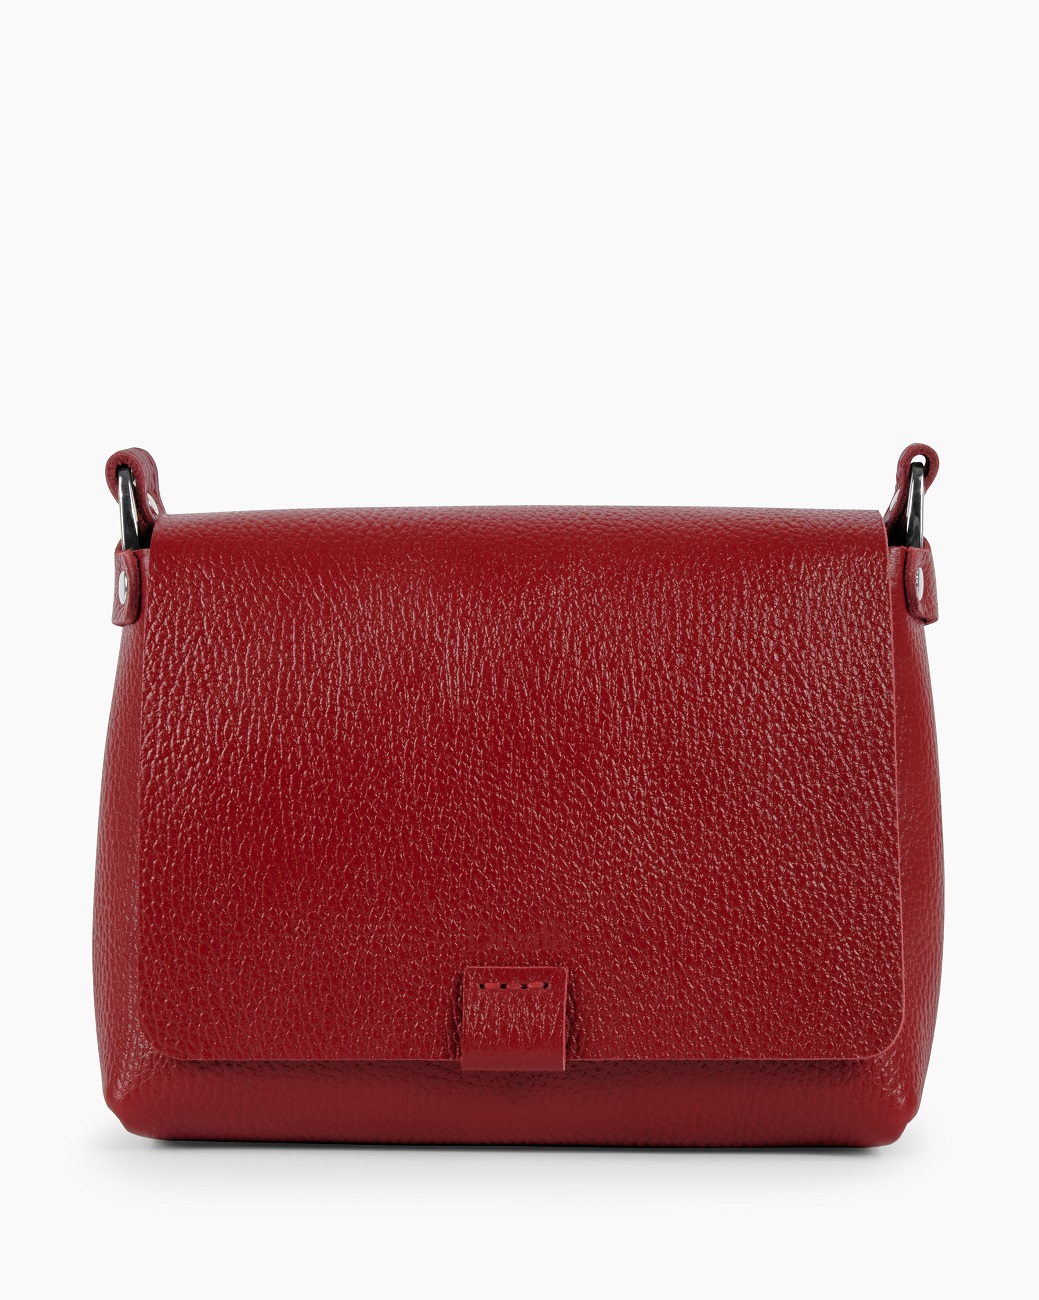 Женская сумка кросс-боди из натуральной кожи красная A002 ruby grain